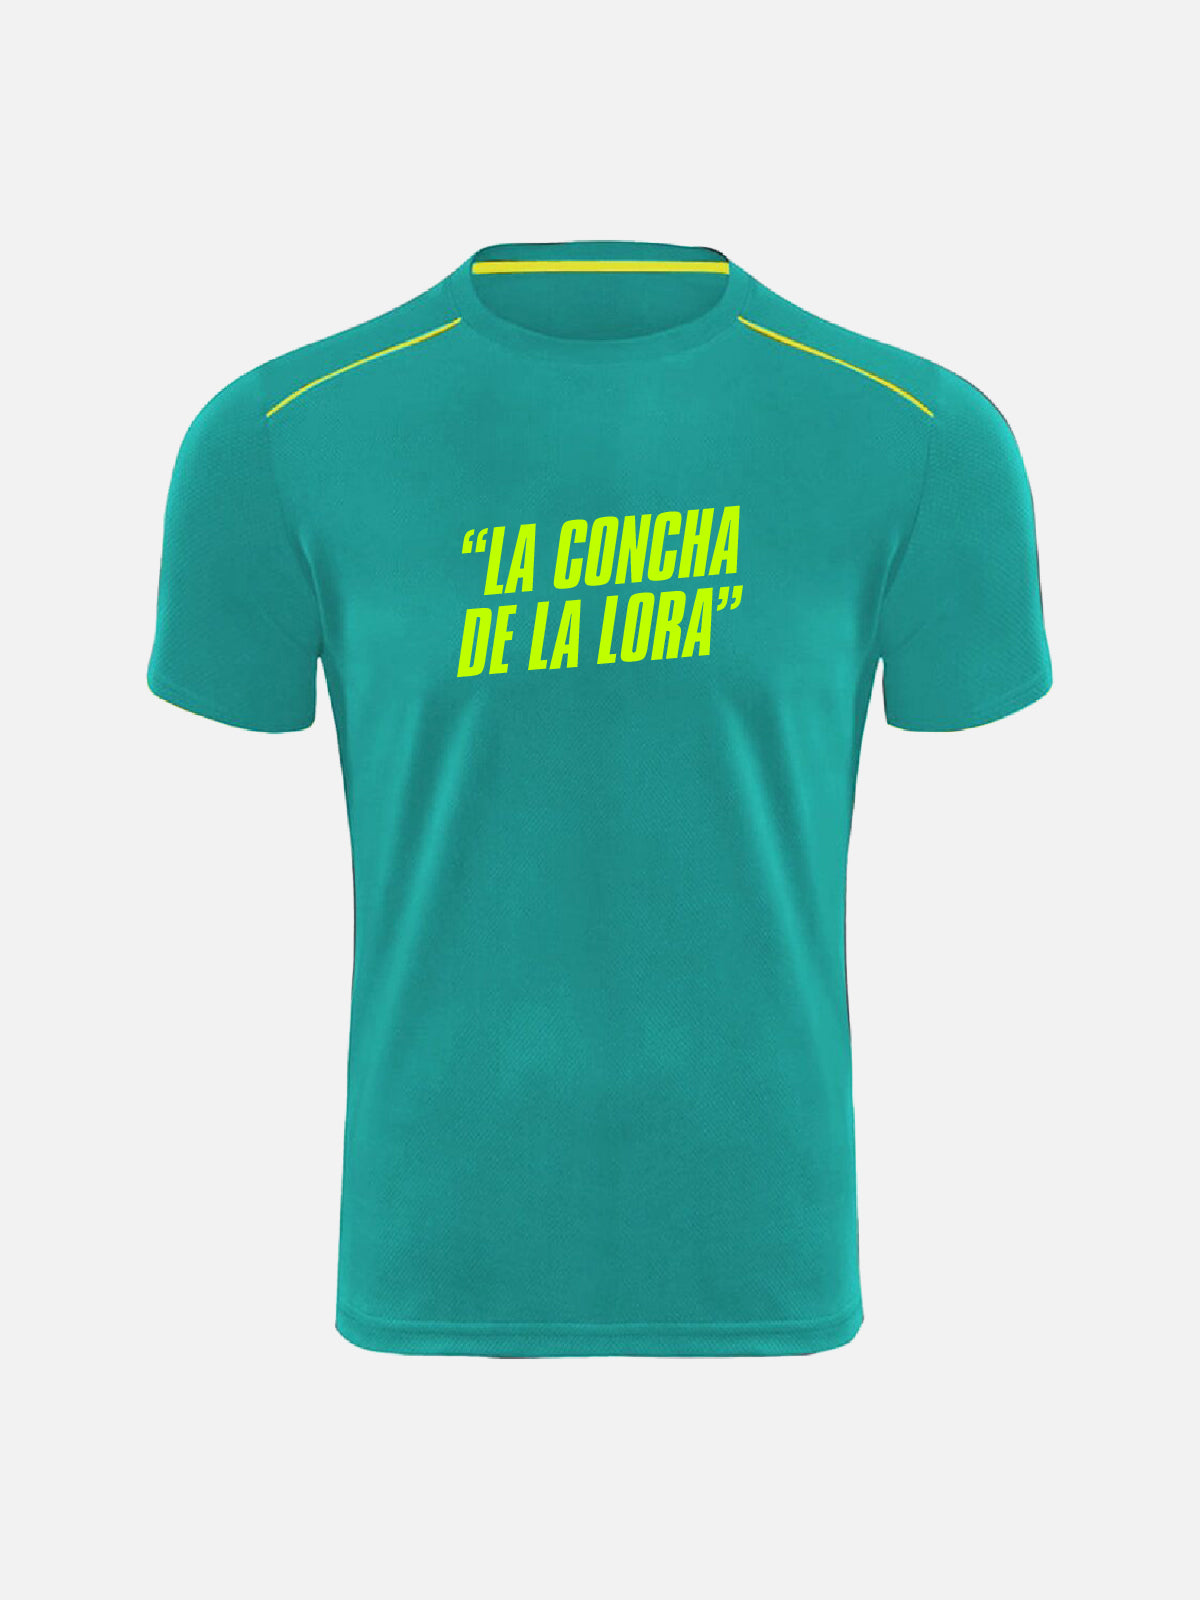 T-shirt Personalizzata - “La Concha De La Lora”